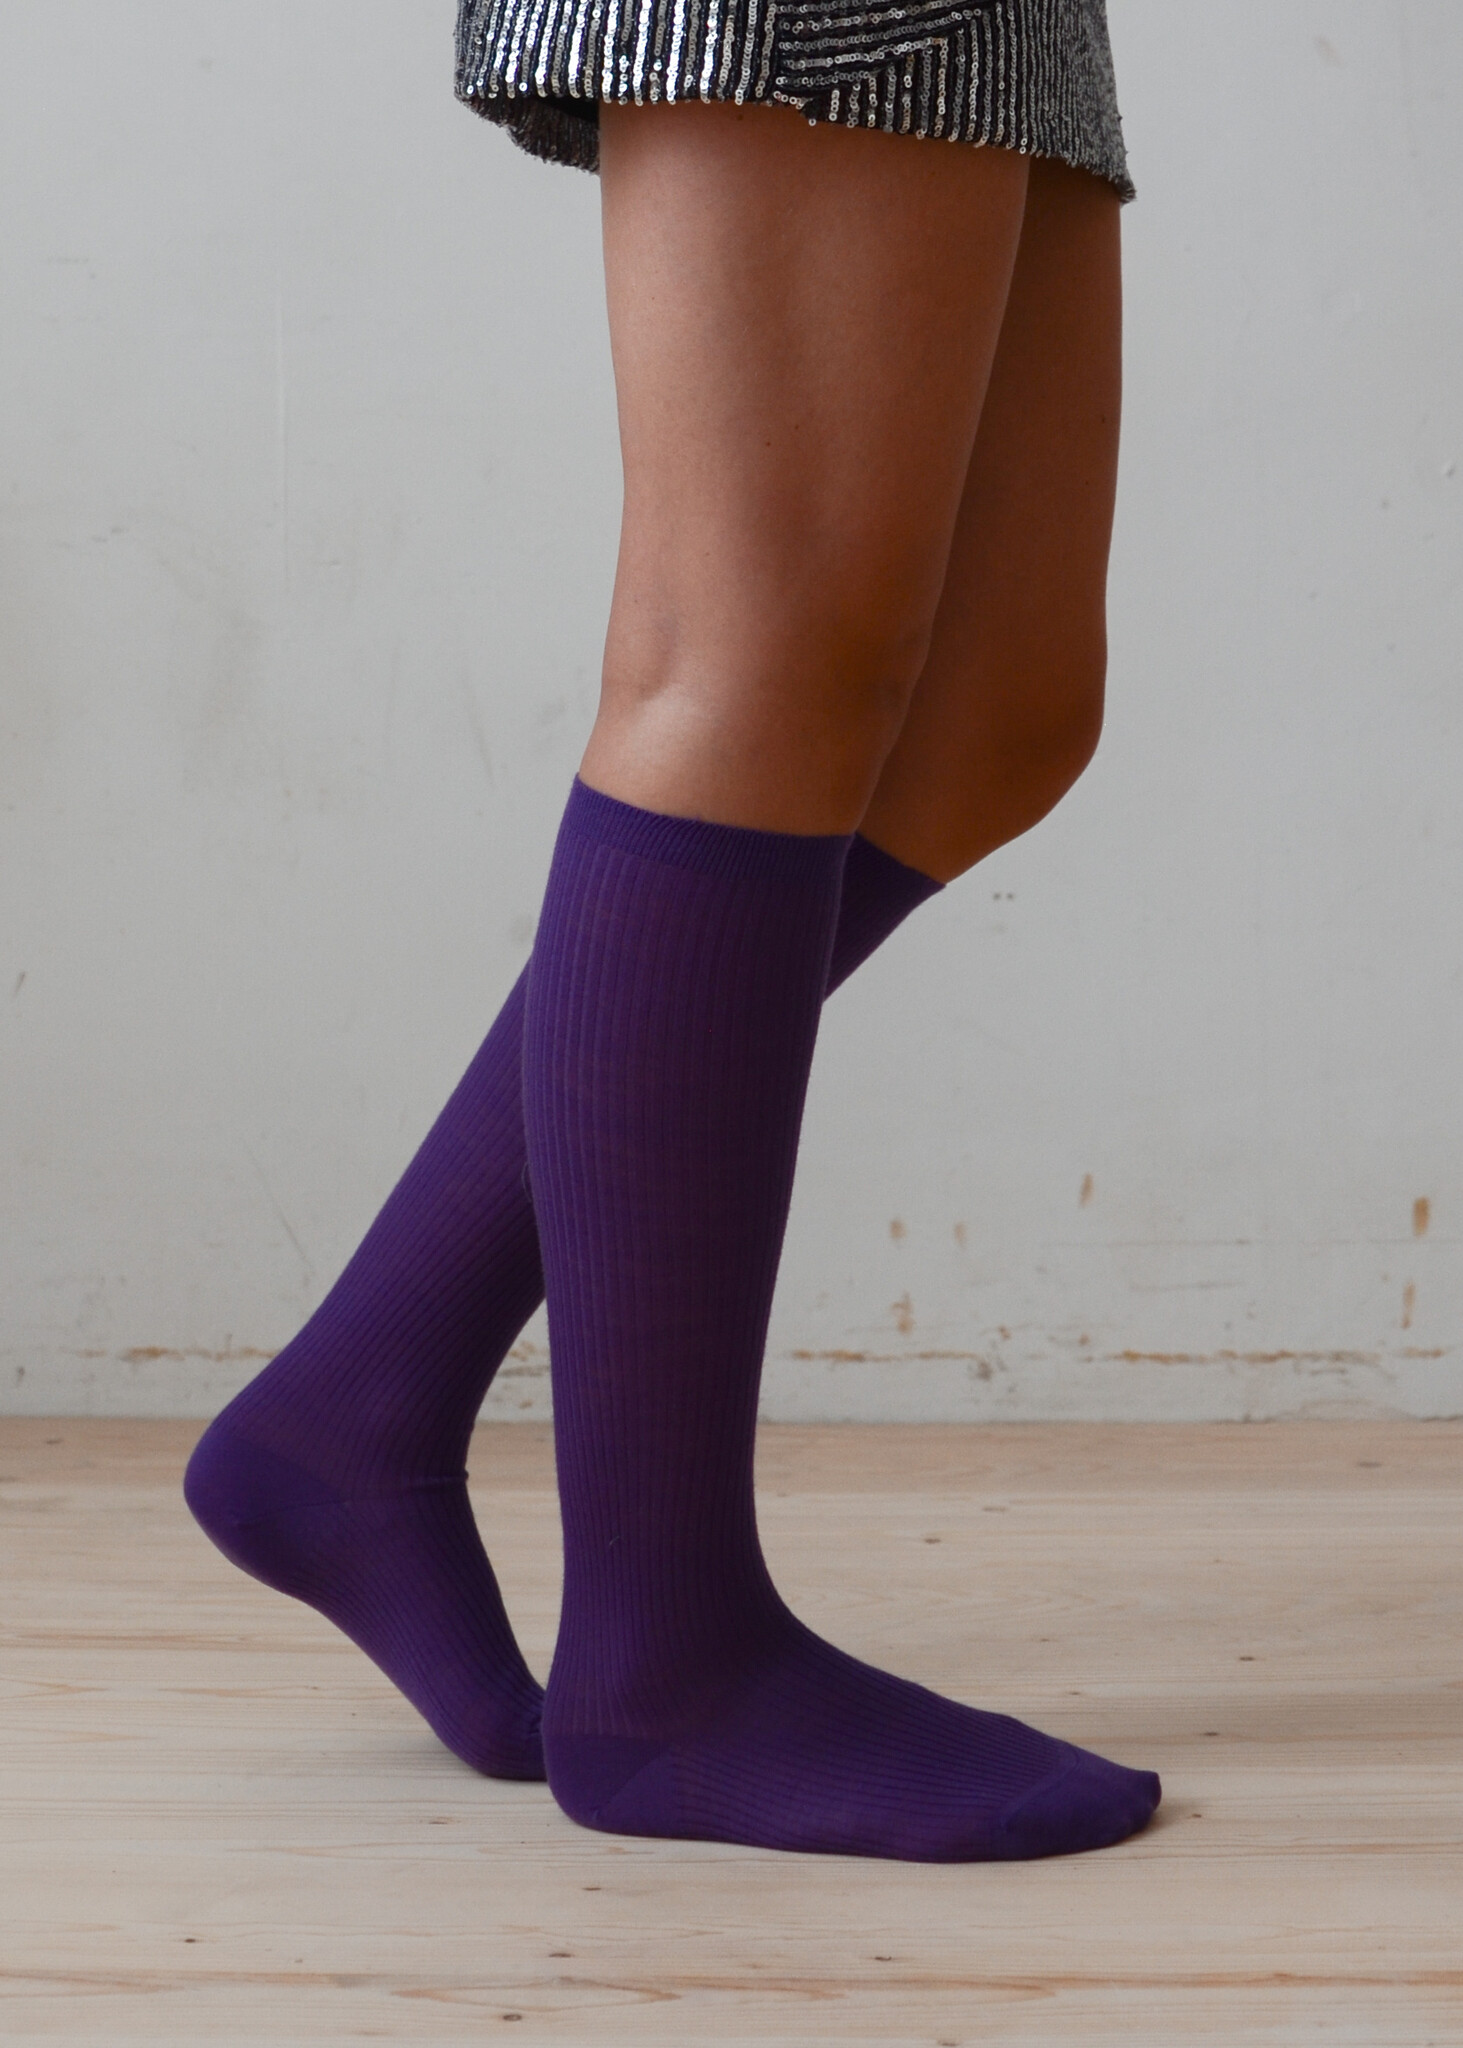 Knee-High Socks in Purple-4